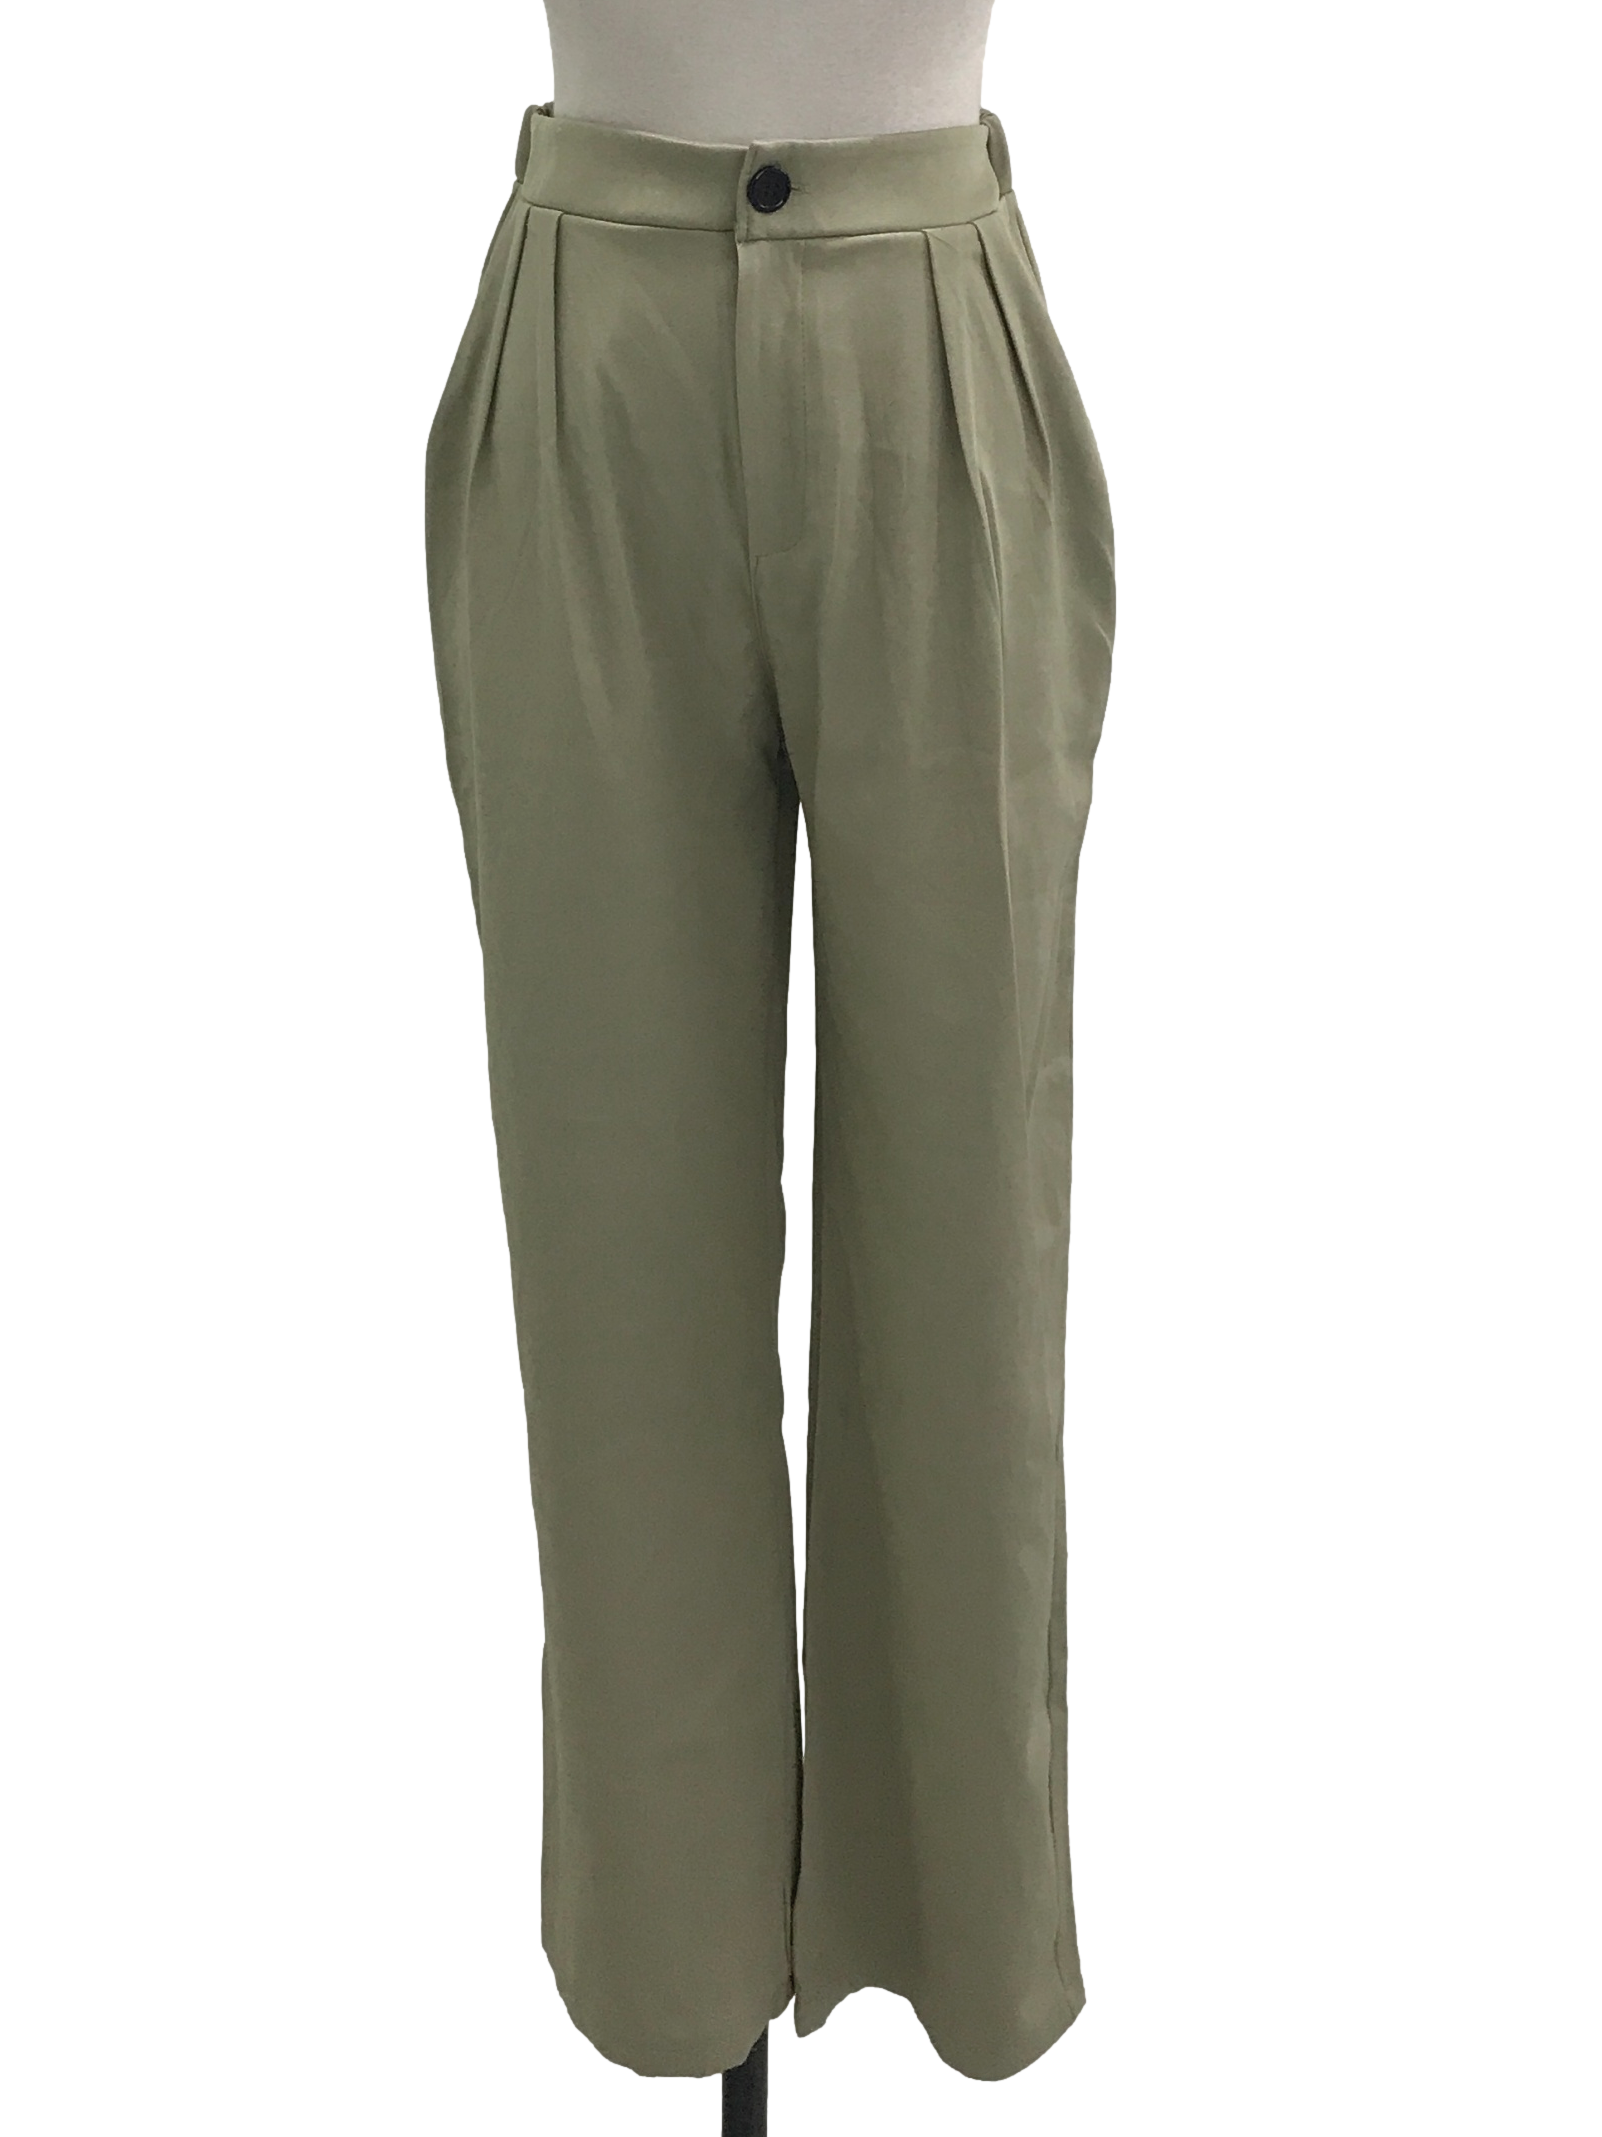 Artichoke Green Slack Pants